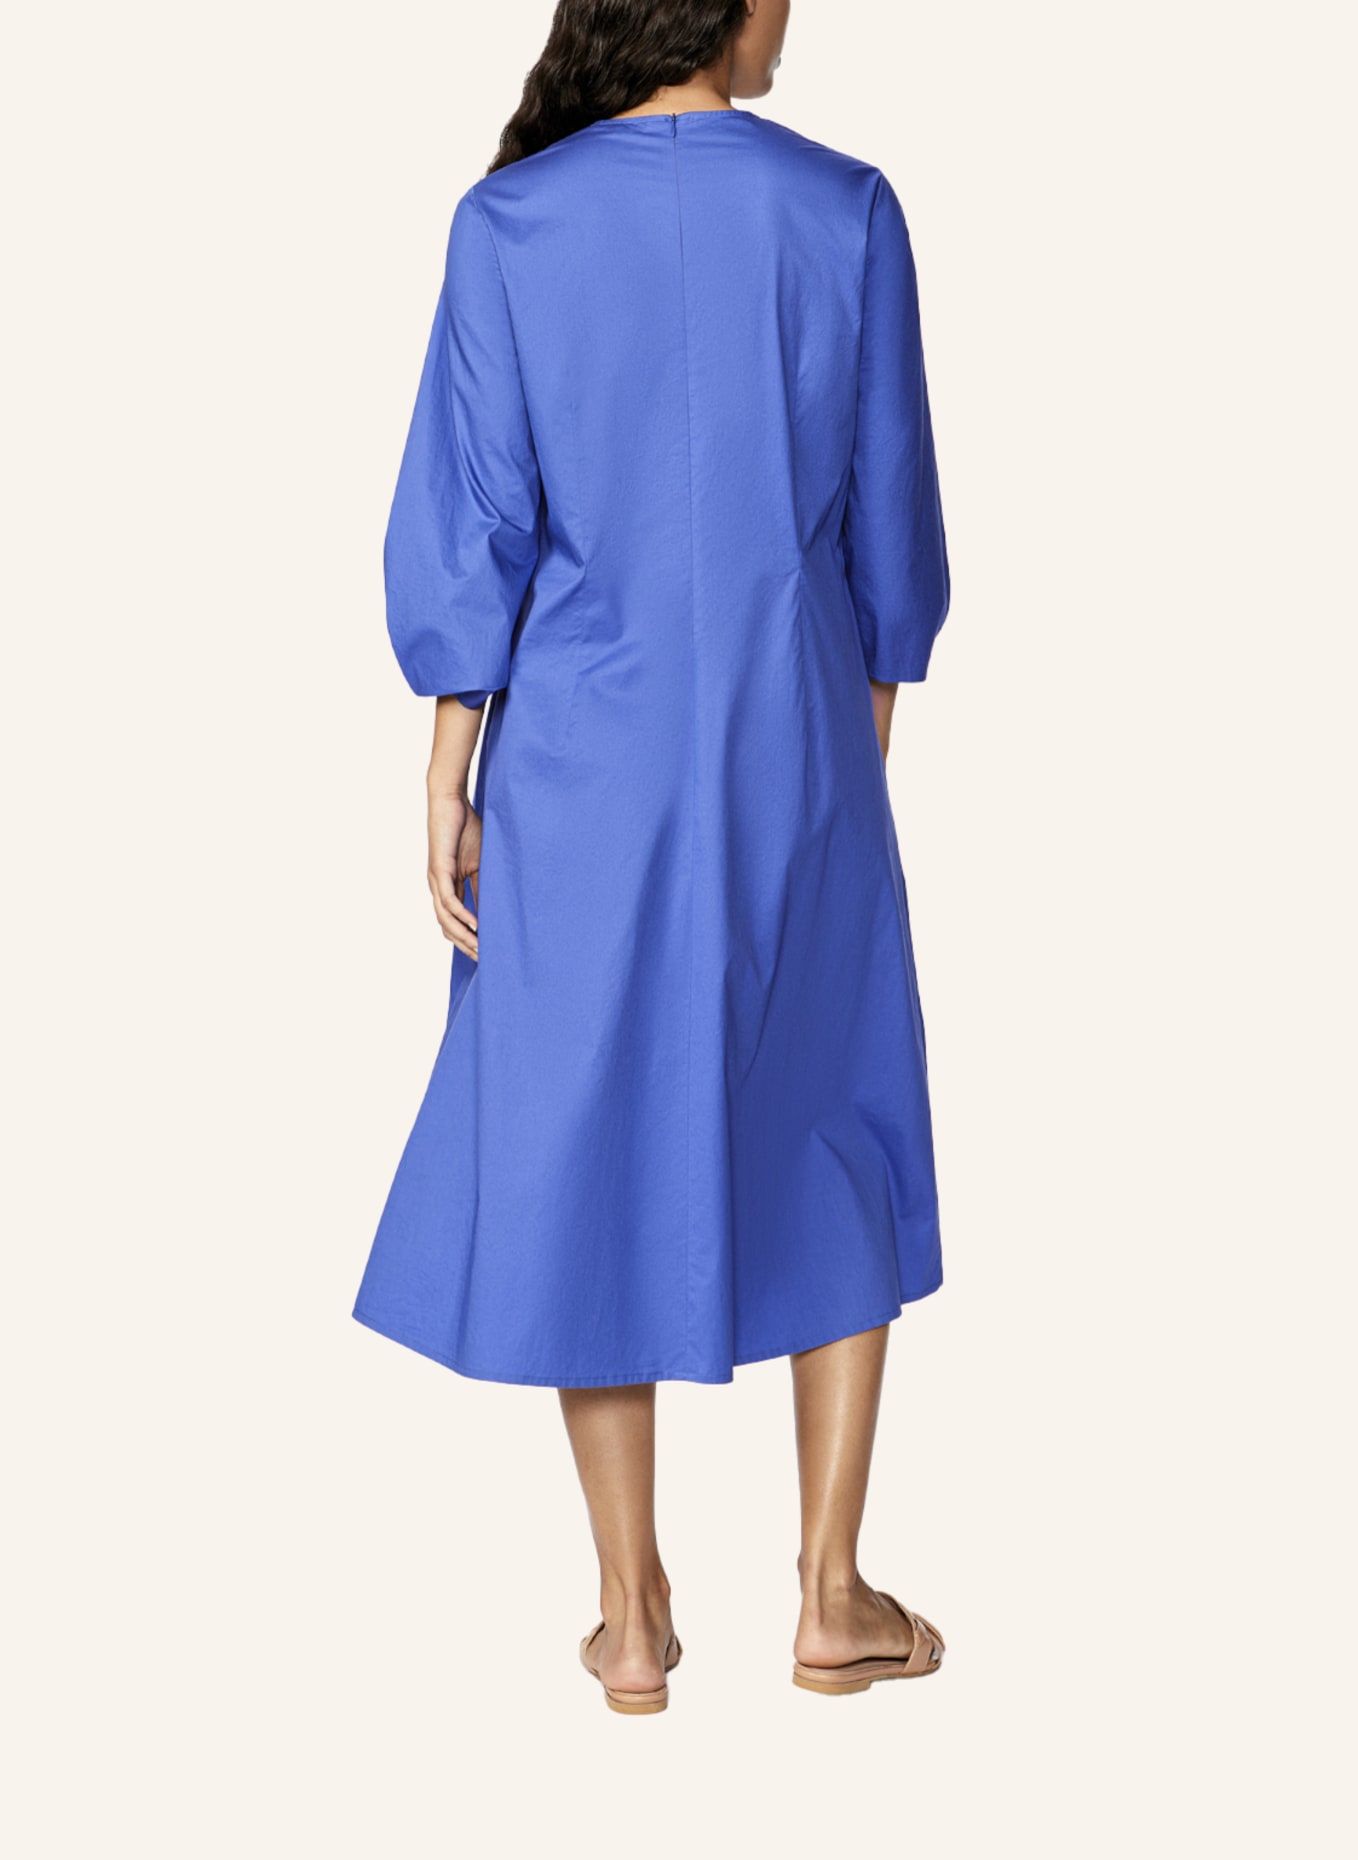 XANDRES Kleid KICKY, Farbe: BLAU/ HELLBLAU (Bild 2)